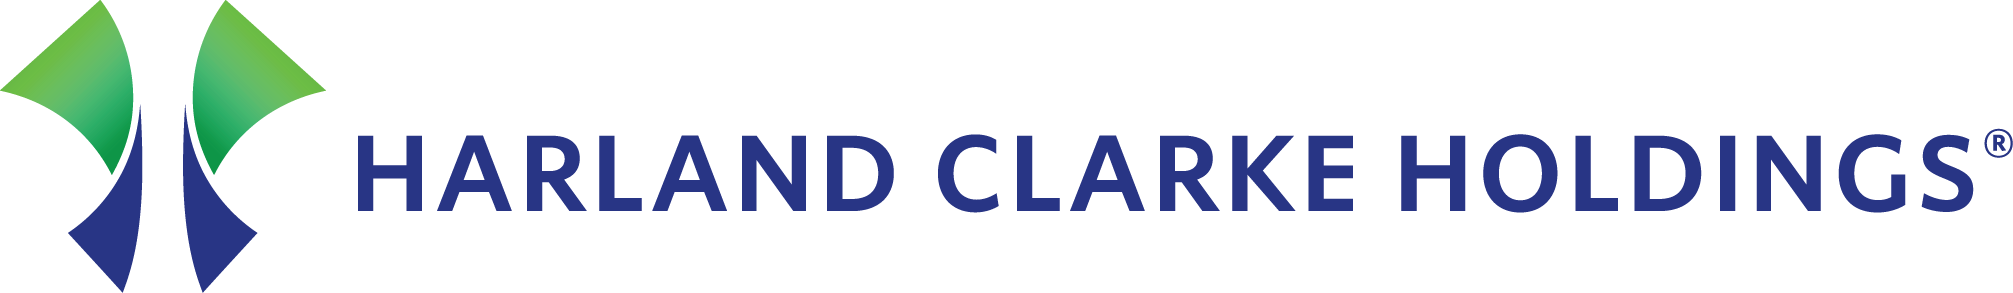 Harland Clarke Holdings Company Logo